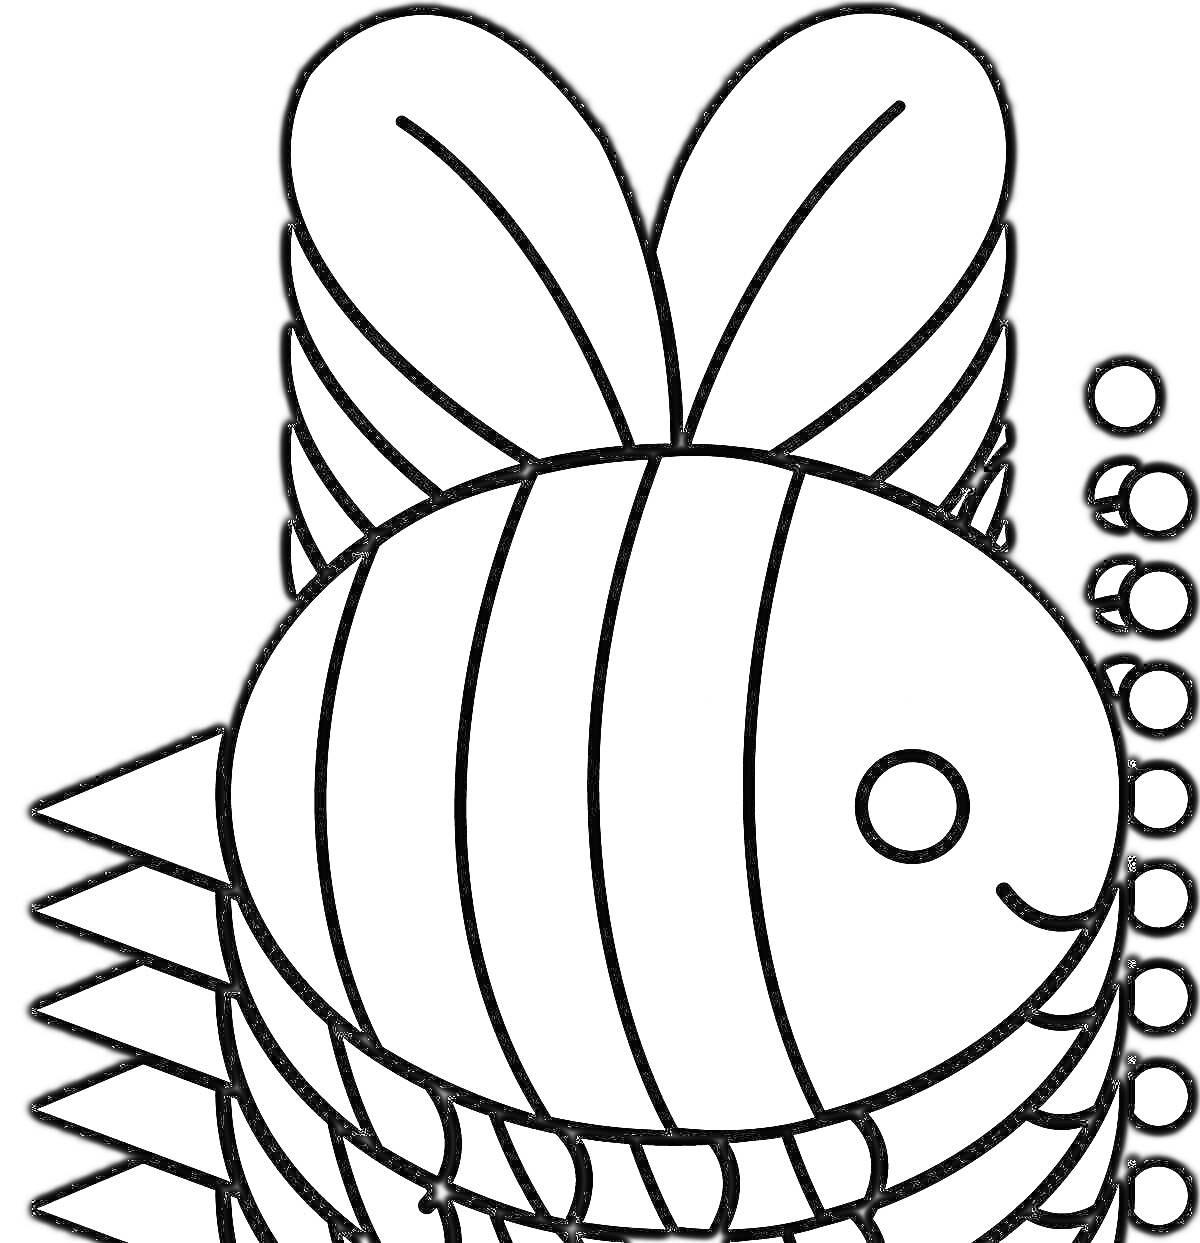 Раскраска Пчелка с полосками и простым лицом на черном фоне